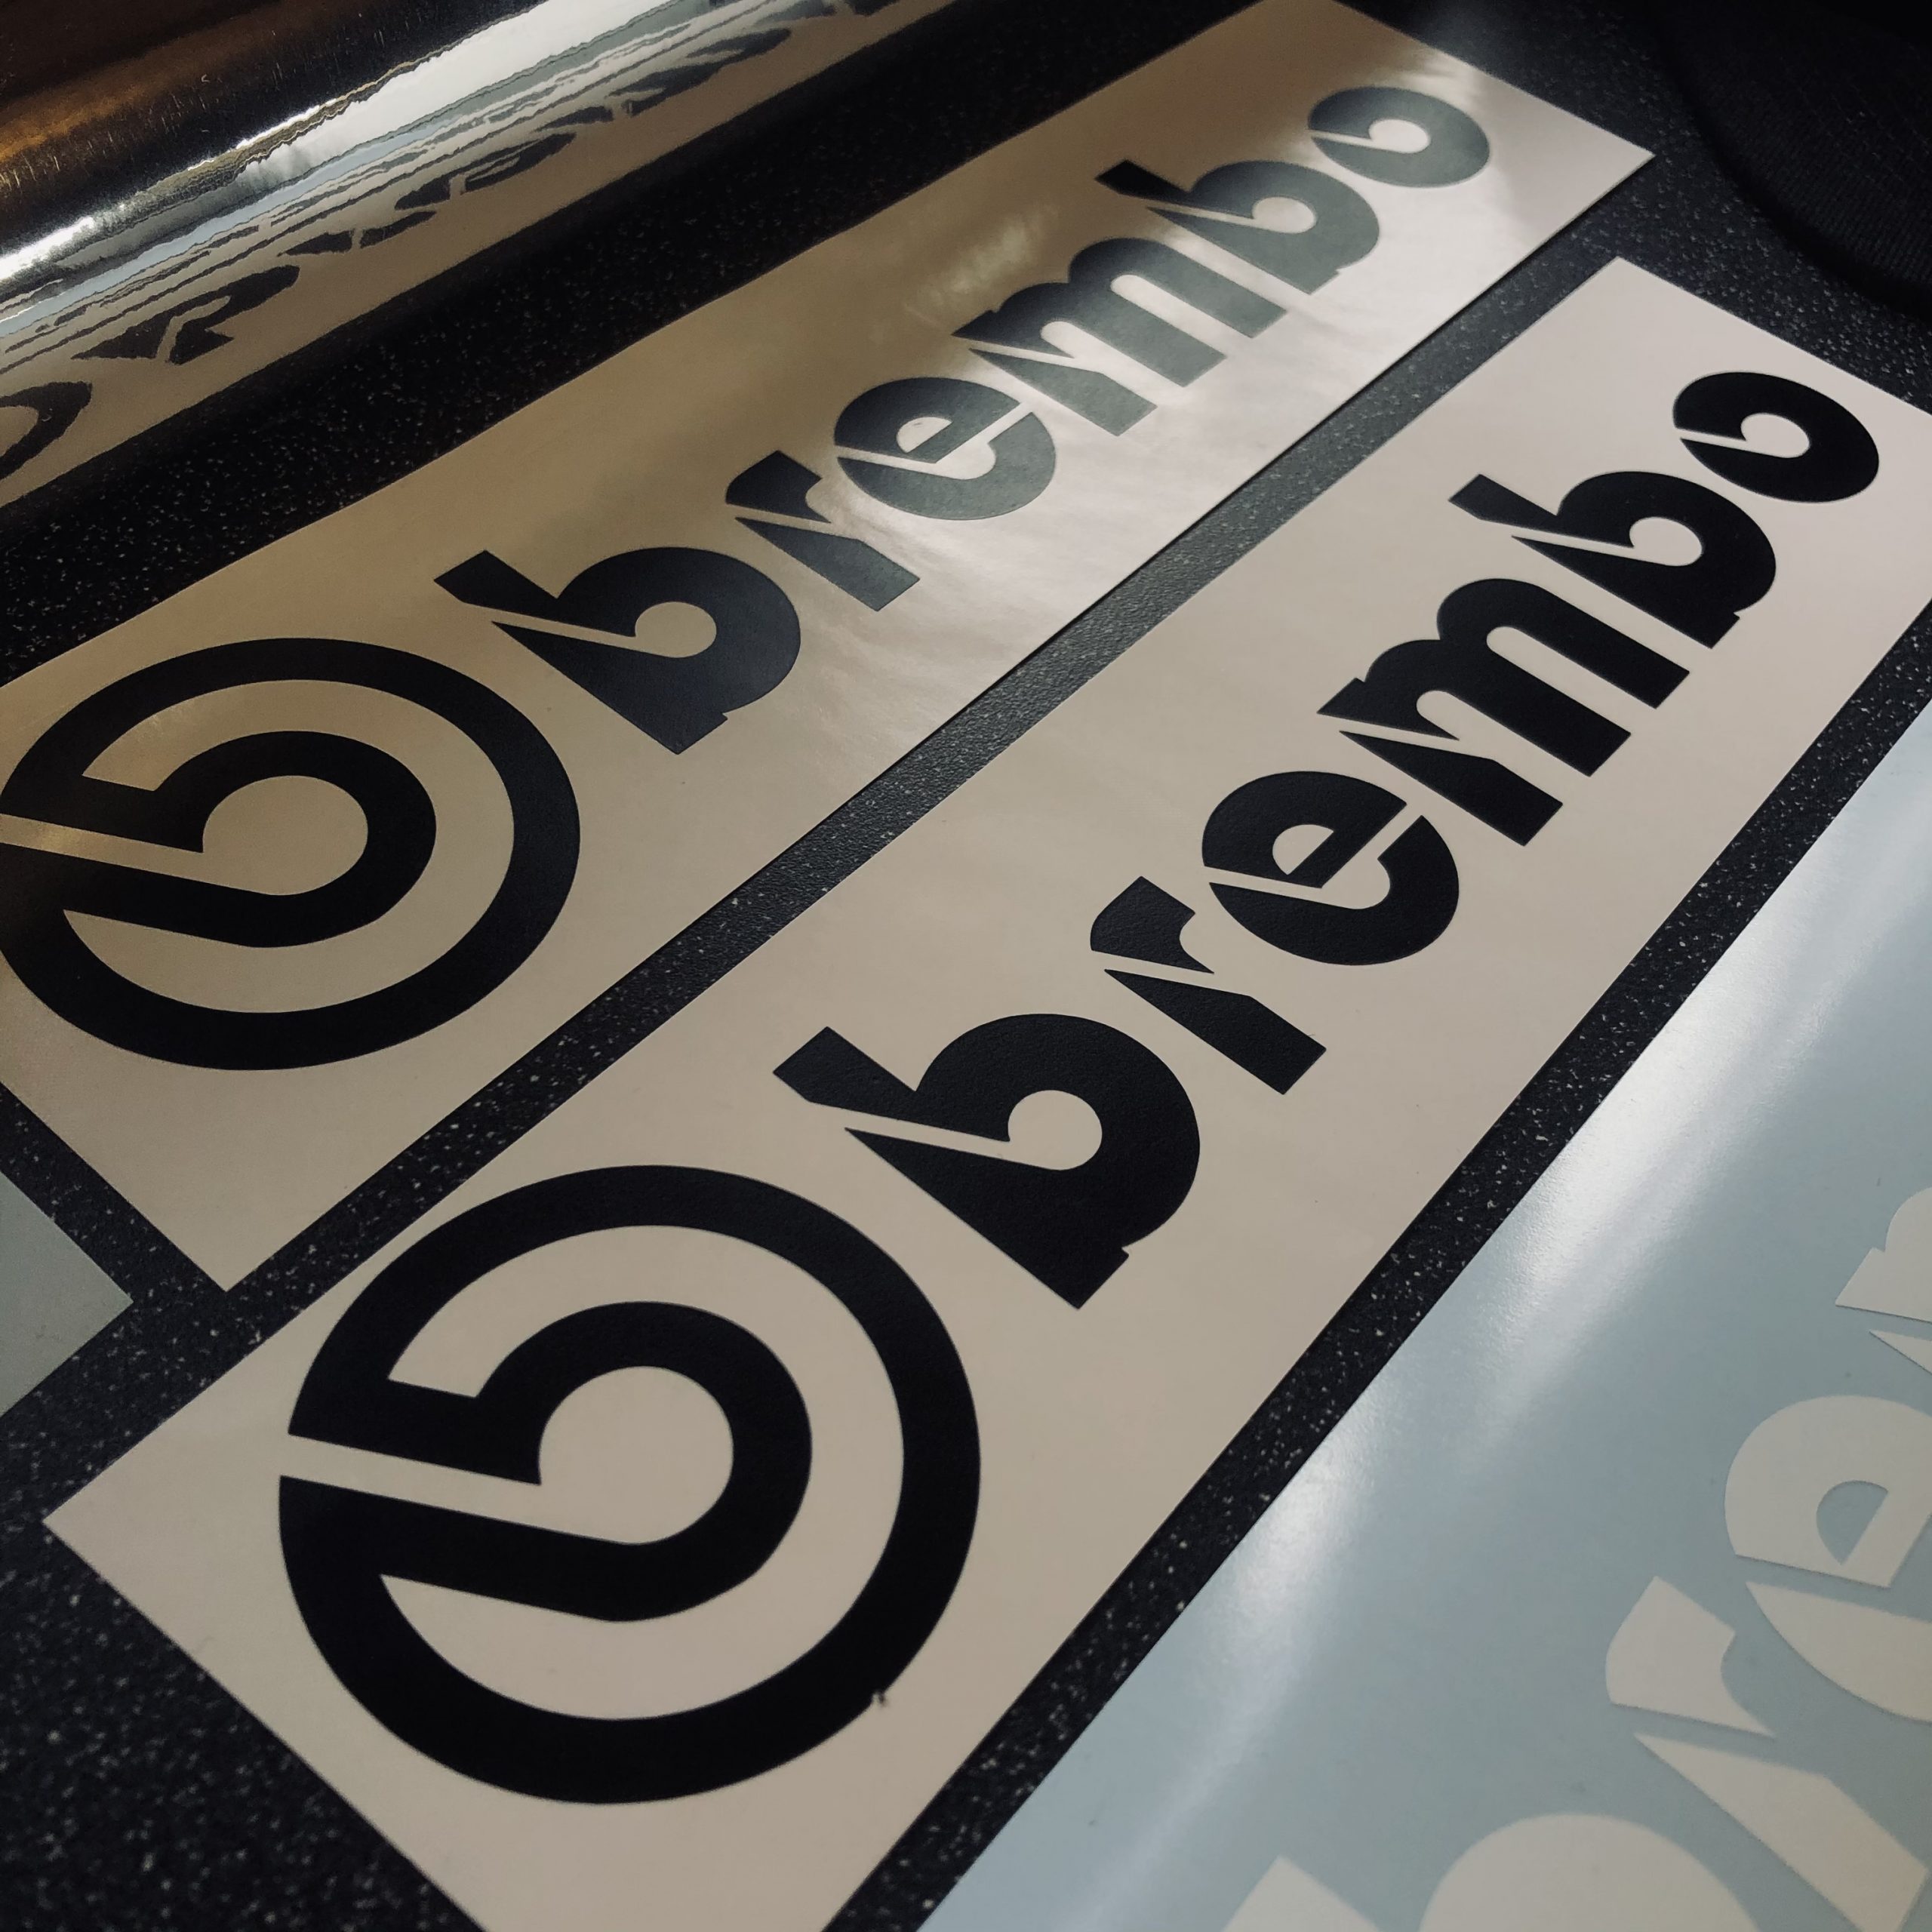 Brembo Sticker – Super Grafix